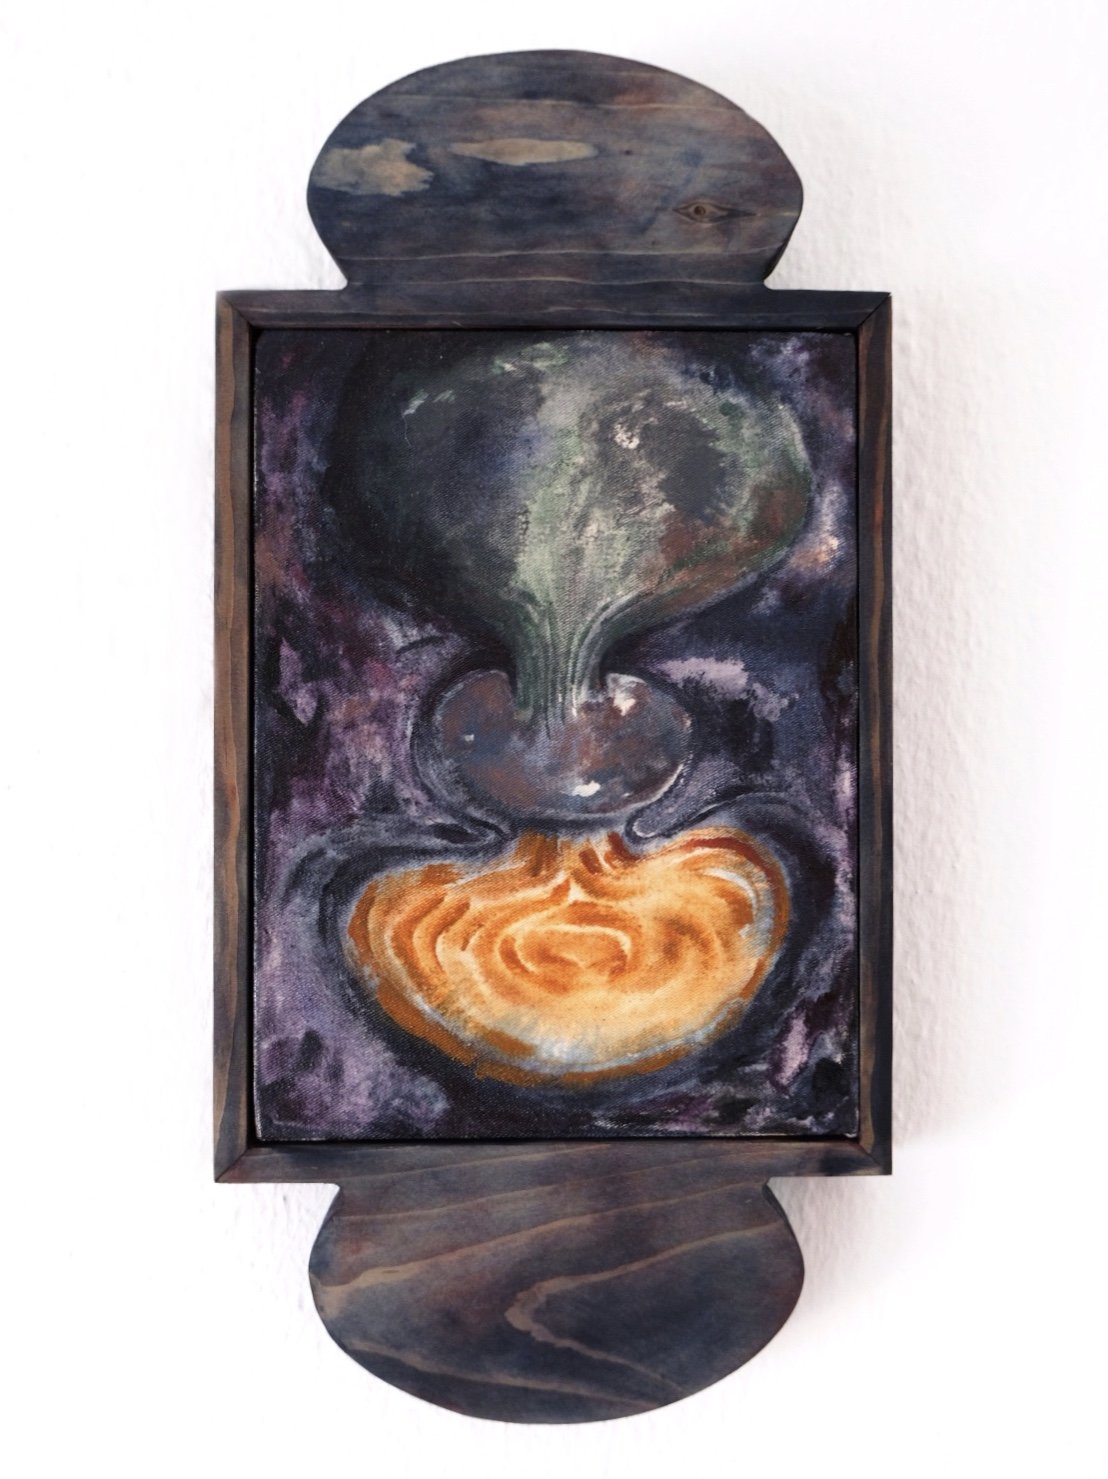   Submundo #2,  2020, Acrylic on canvas, handmade oak frame. 20cm x 41cm.  